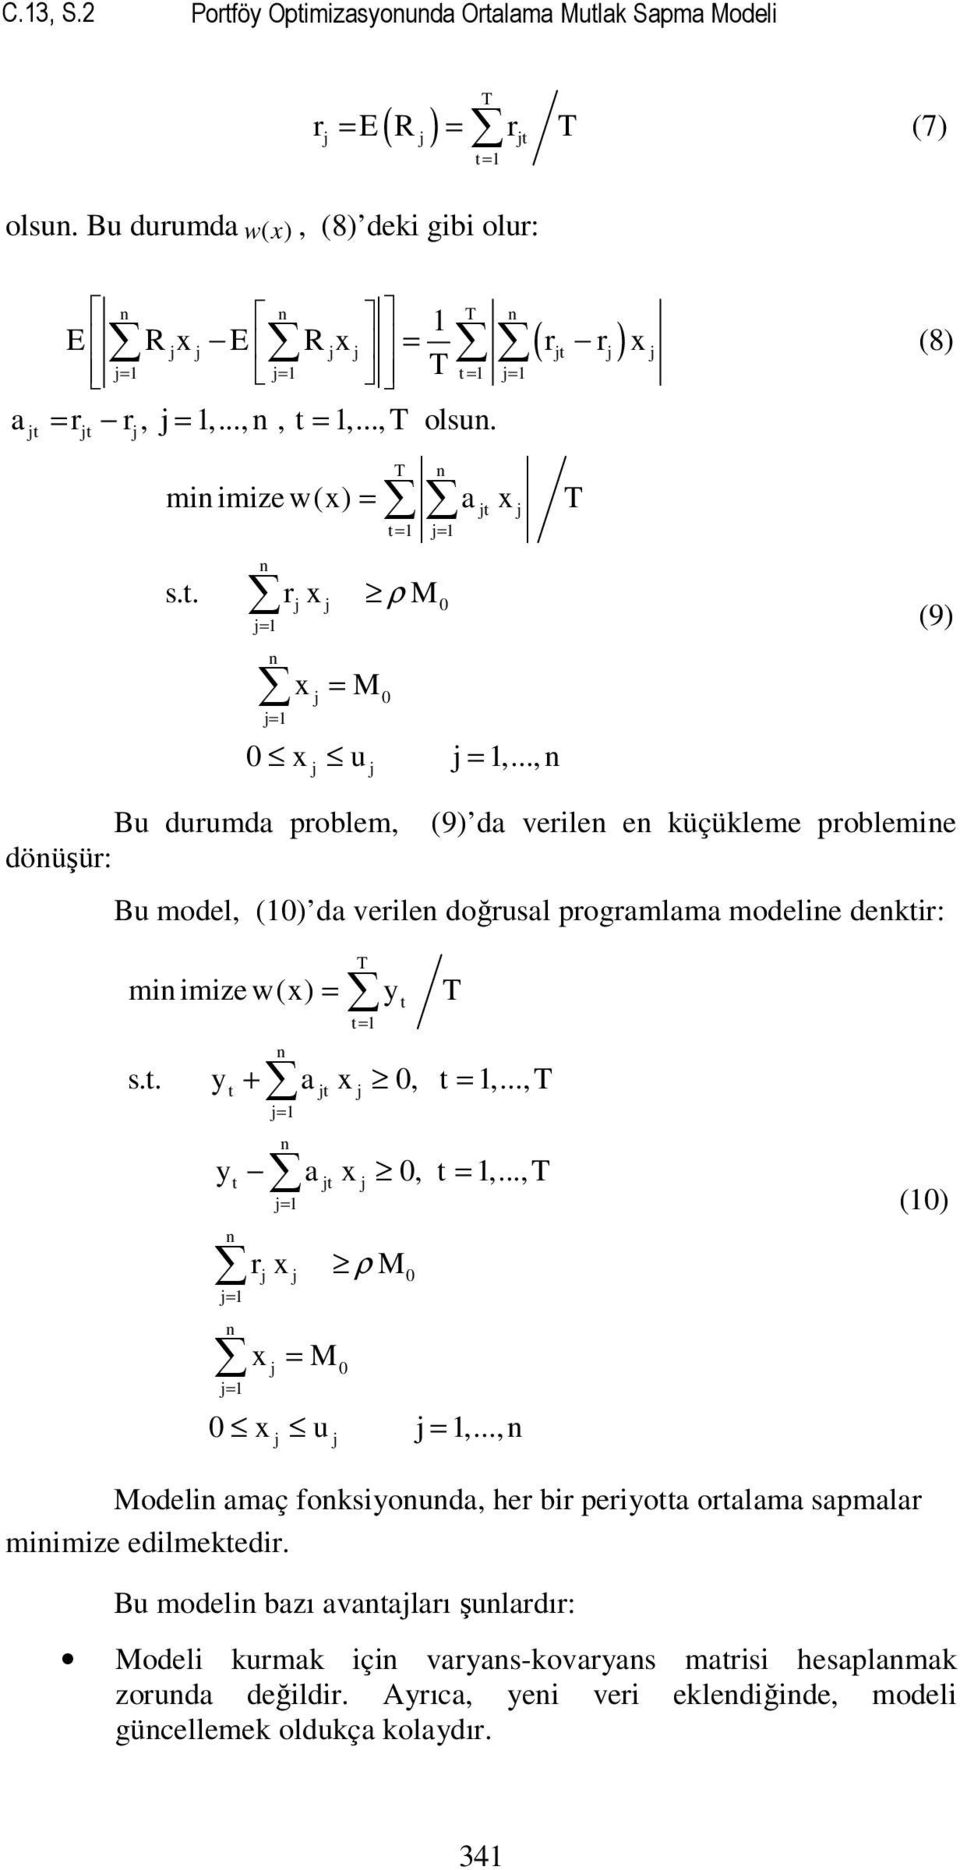 .., t (9) Bu durumda problem, (9) da verle e küçükleme probleme döüşür: Bu model, (0) da verle doğrusal programlama modele dektr: m mze w(x) = y T T t= s.t. y + a x 0, t =,.